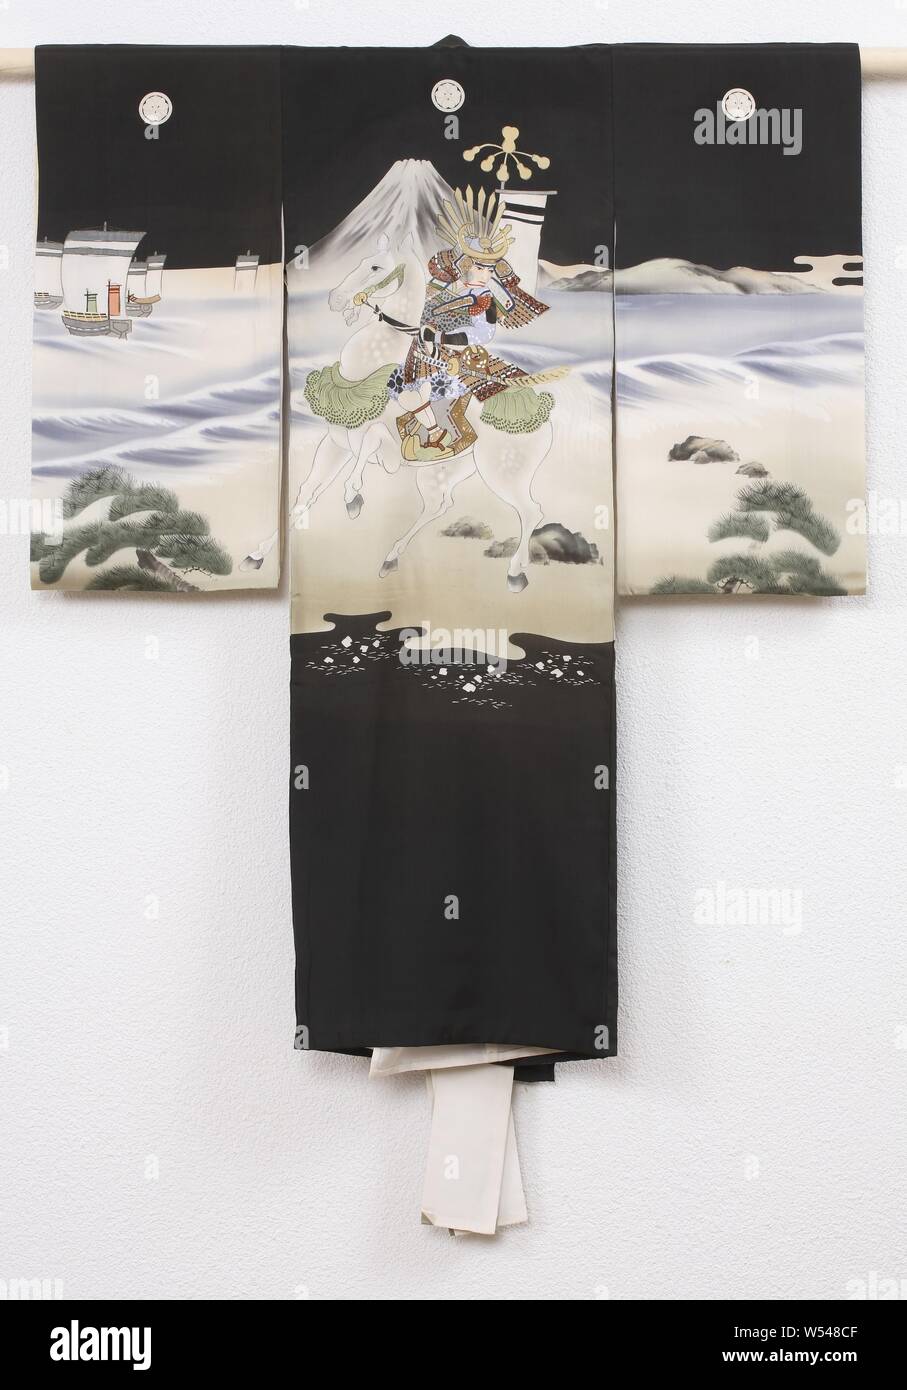 Jungen miyamairi Kimono mit der Schlacht des Fuji Fluss, Formal kimono für einen Jungen für den ersten Besuch in einem Shinto Schrein (miyamairi Kimono), mit einer Dekoration einer Nacht Szene mit einem Samurai auf dem Pferd am Ufer des Fuji Fluss, die Berge und die Schiffe im Hintergrund. Wahrscheinlich eine Szene aus der Schlacht von Fuji Fluss in 1180. Schwarze Seide mit einem gemalten yuzen Dekoration mit gesticktem Detaillierung und Blattgold. Weißer Seide gefüttert. Fünf Familie Waffen (mon) Der sauerampfer (katabami)., anonym, Japan, 1920-1940, Seide, Malerei, h 103 cm x W 85 cm. Stockfoto